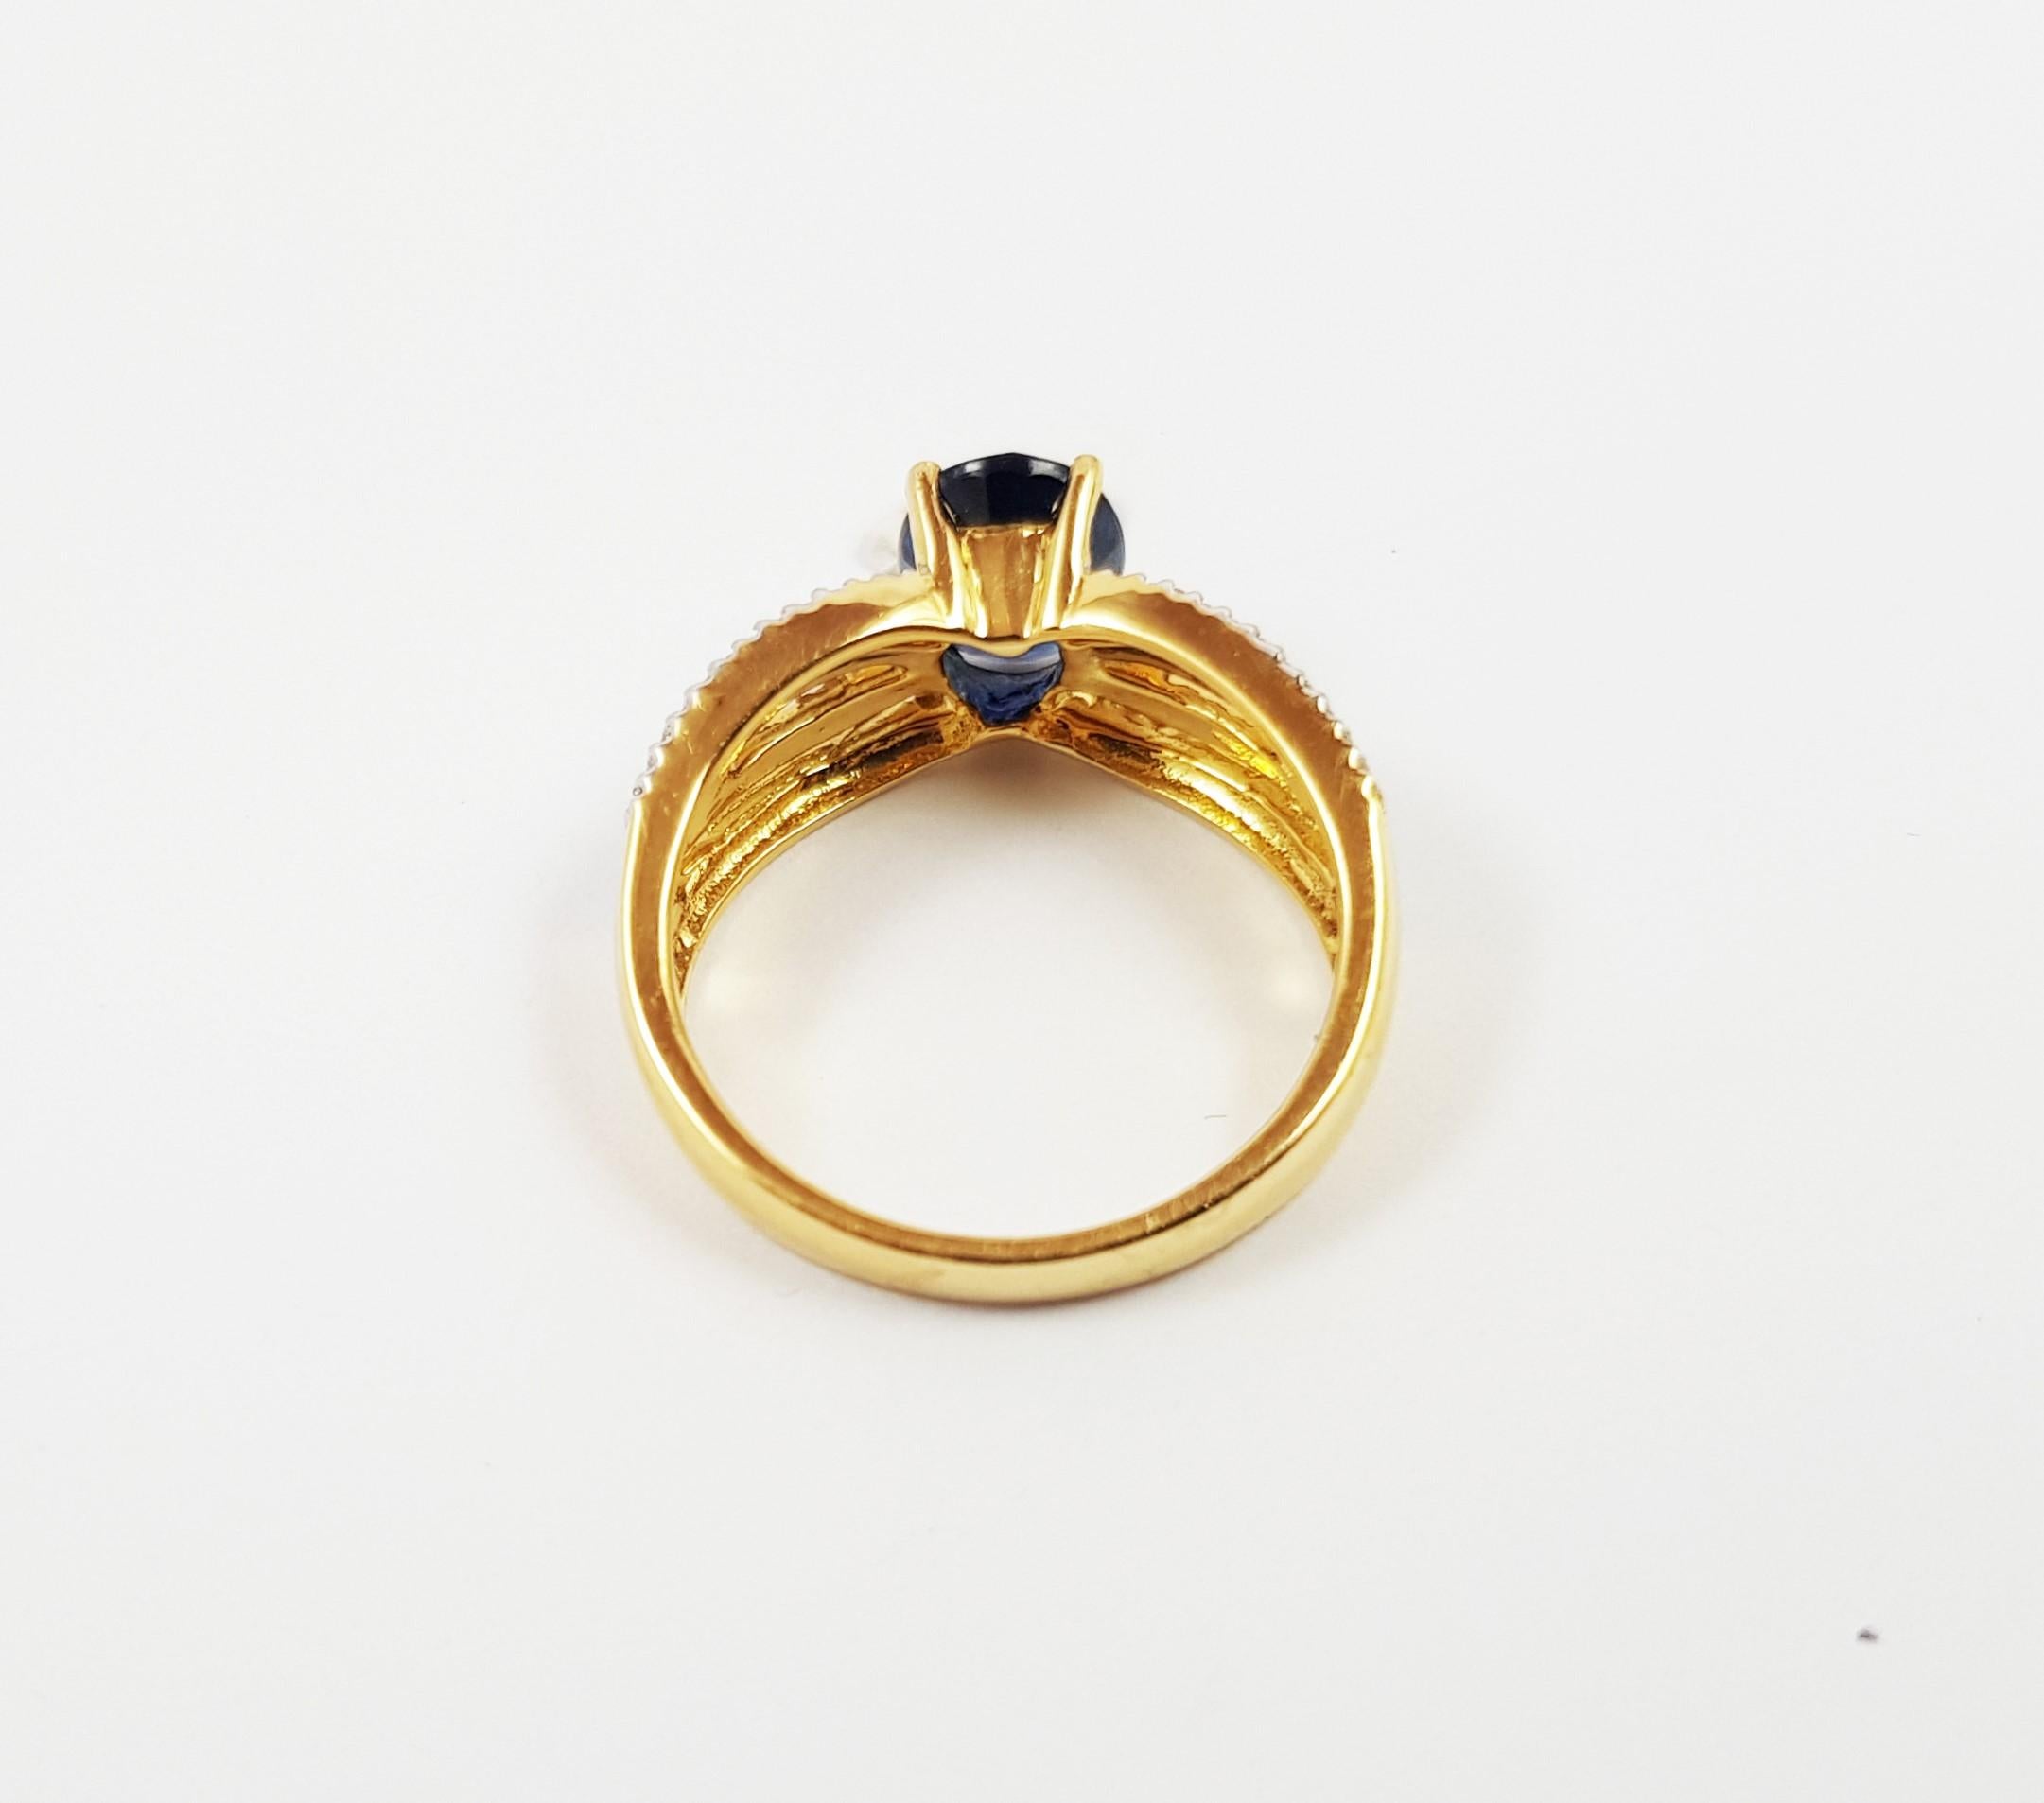 Bague en or 18 carats sertie d'un saphir bleu de 1,81 carat et d'un diamant de 0,24 carat

Largeur : 0,6 cm
Longueur : 0,8 cm 
Taille de l'anneau : 53

